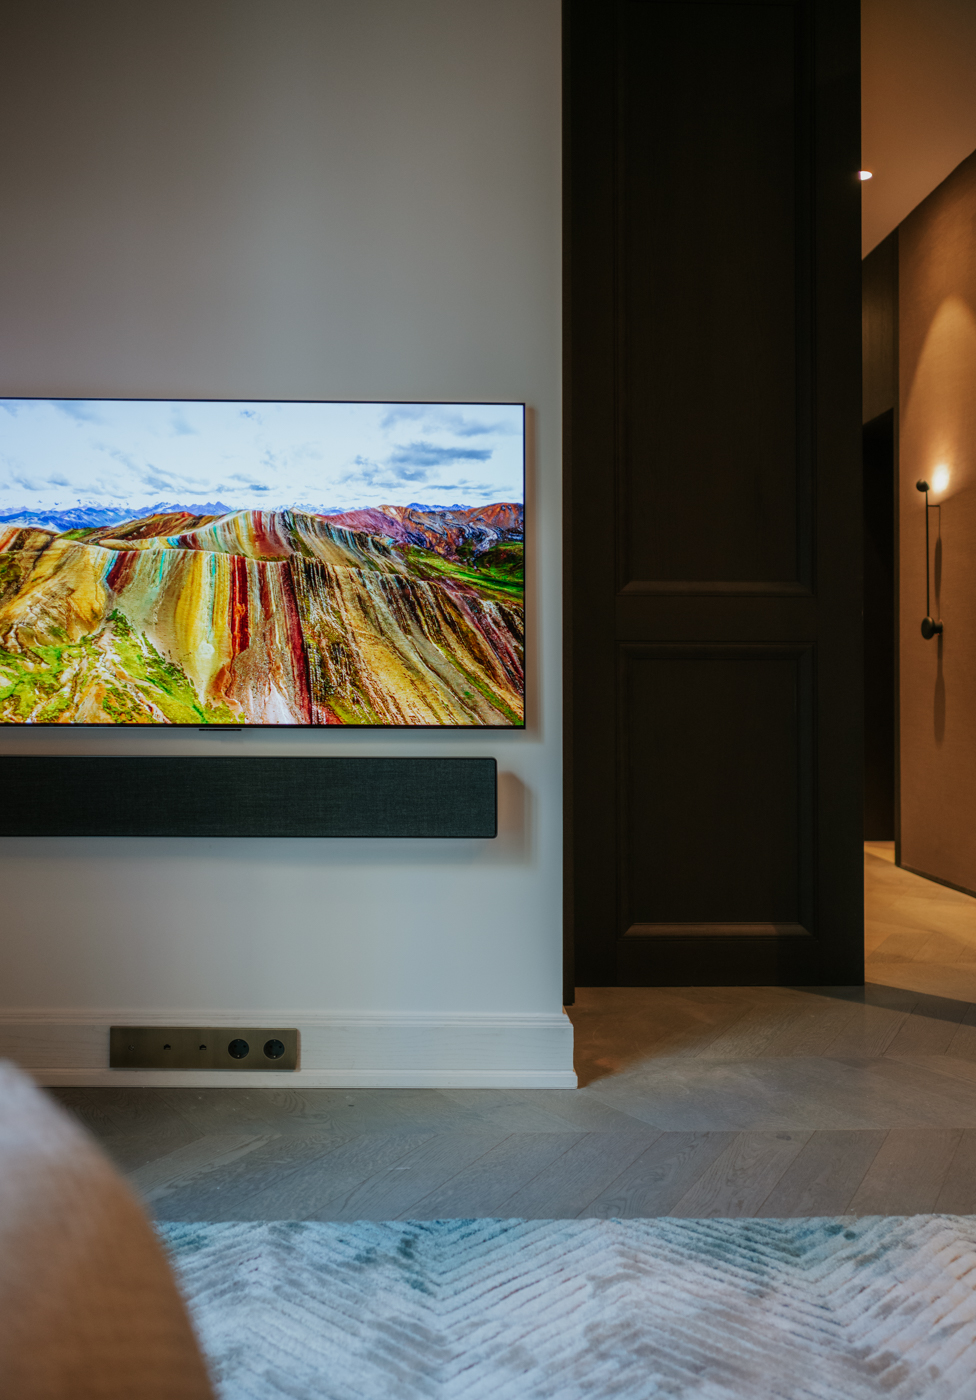 Bang & Olufsen BeoSound Stage Soundbar mit LG Evo G2 OLED TV